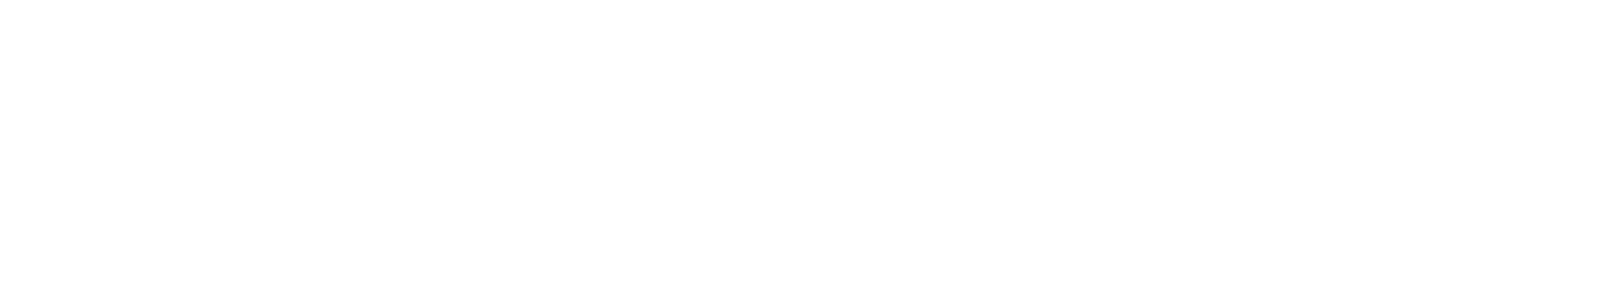 Dynatrace logo grand pour les fonds sombres (PNG transparent)